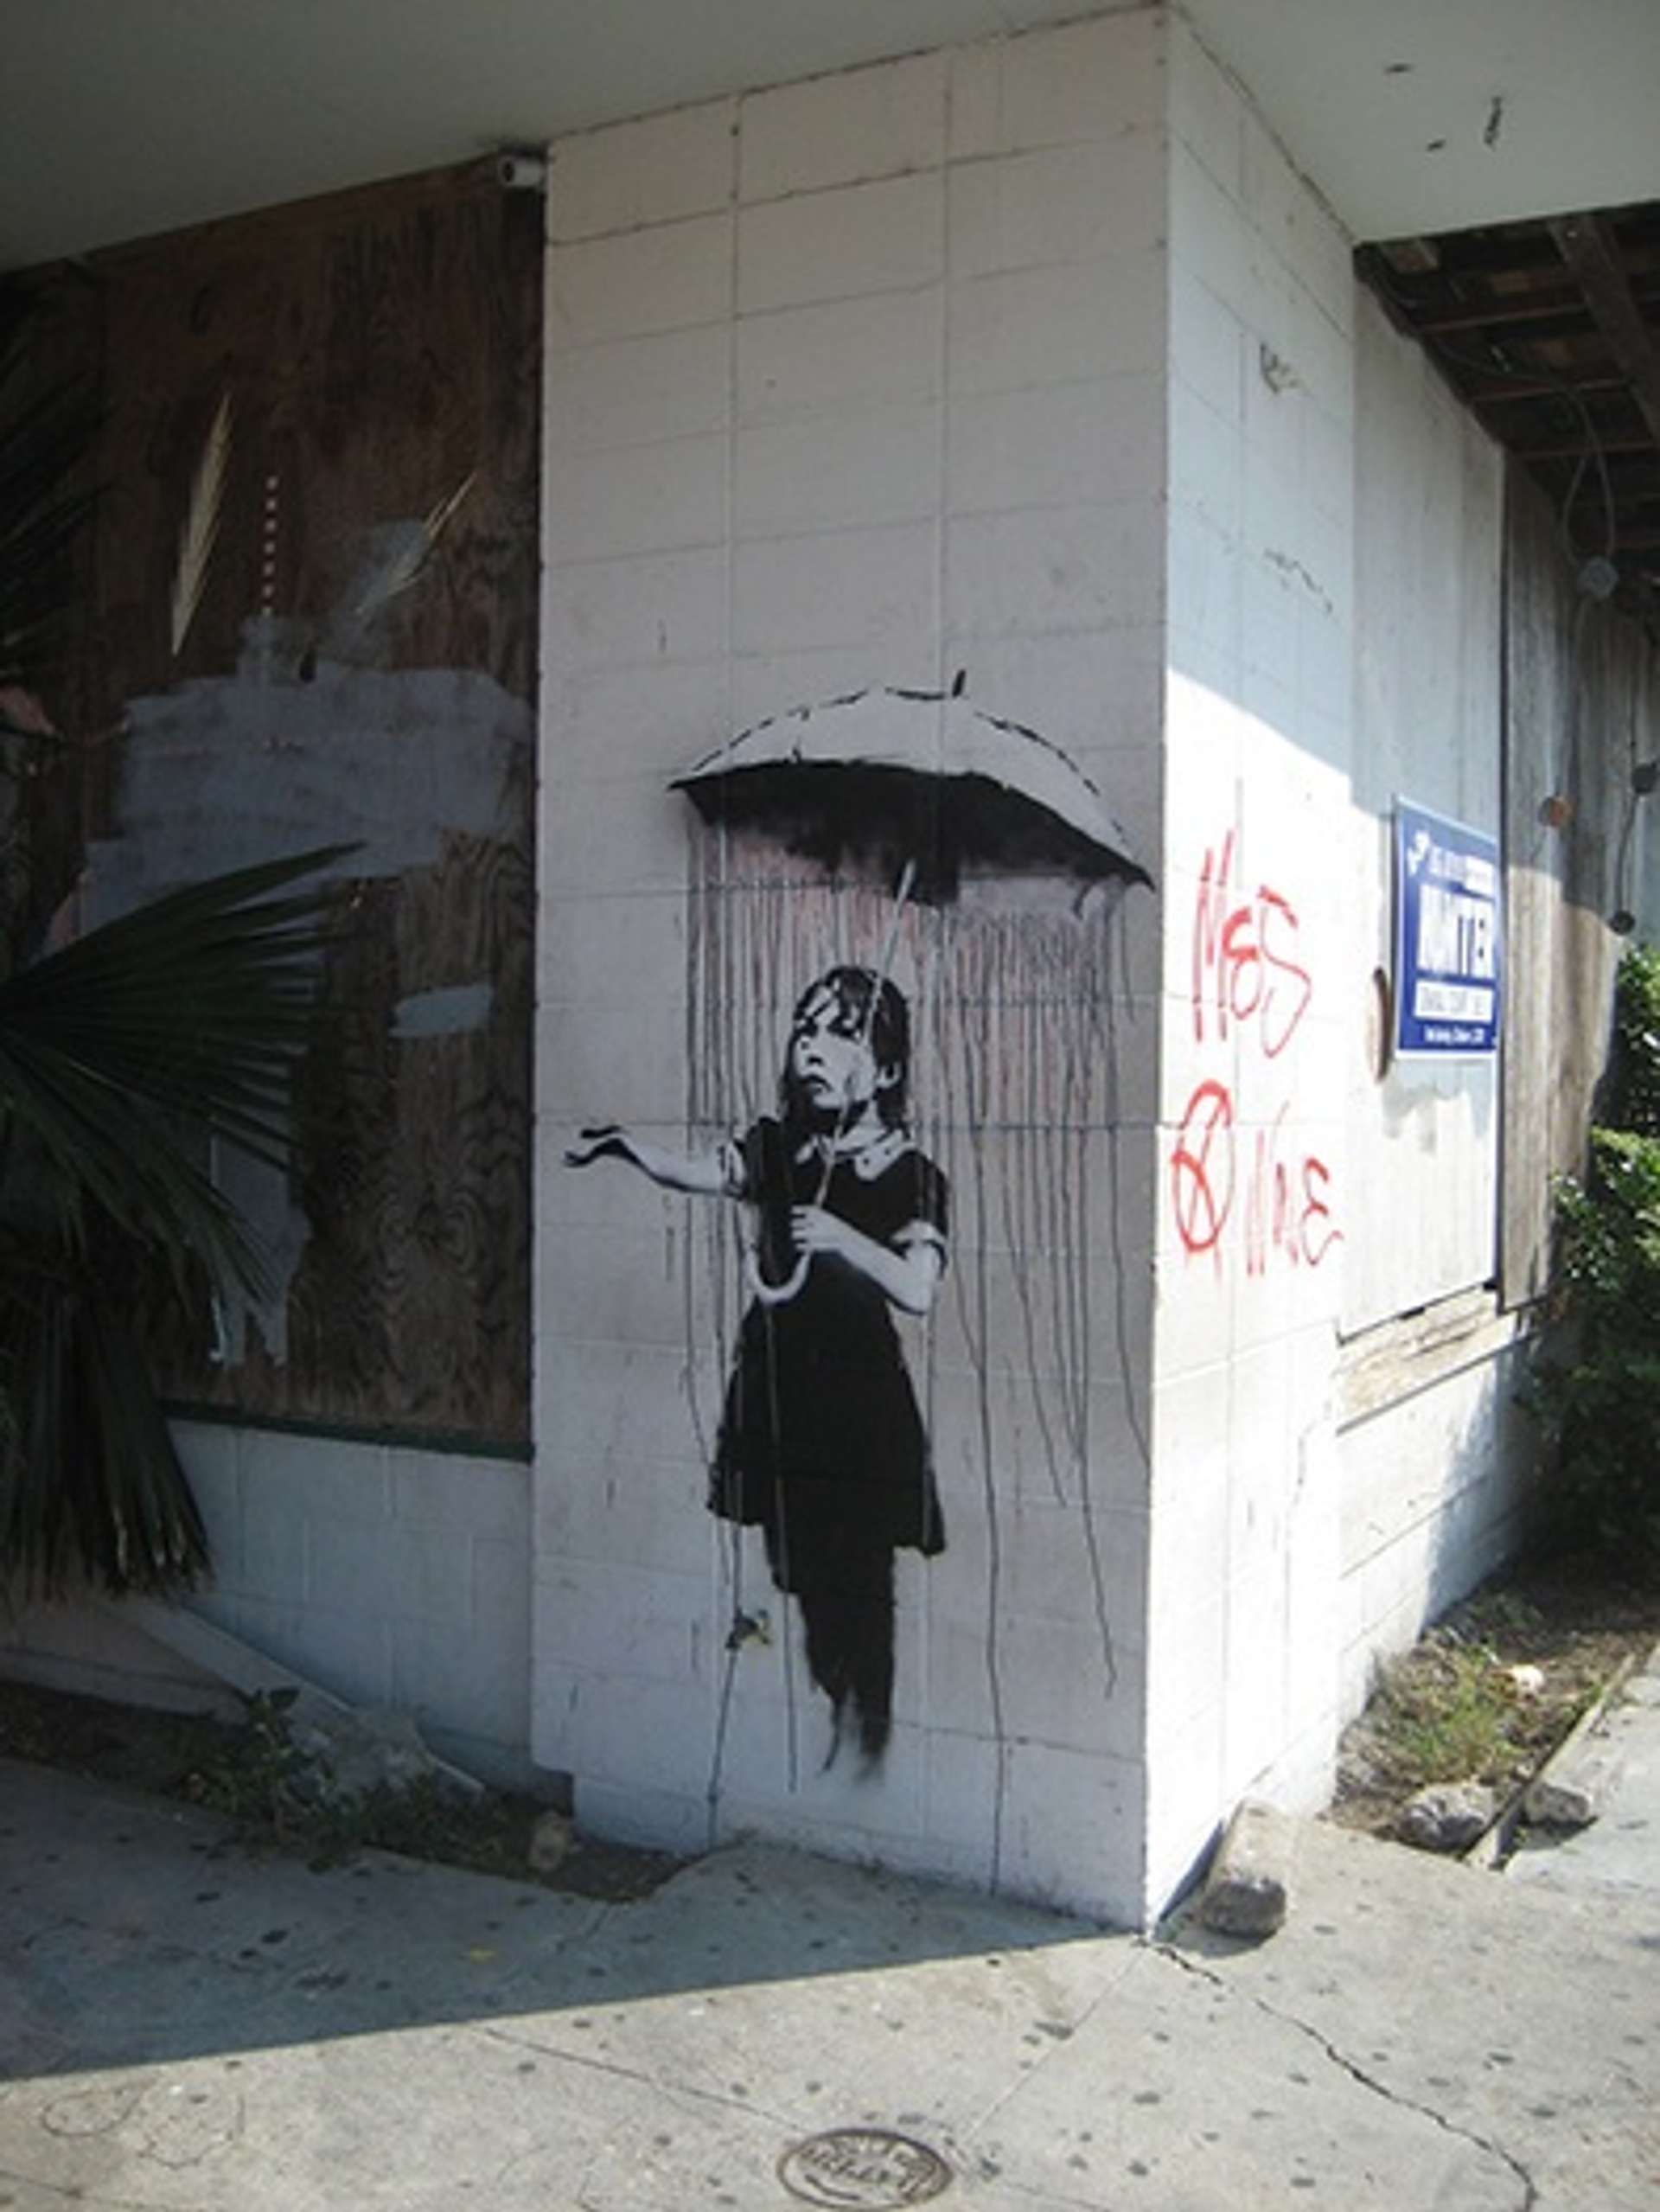 Nola by Banksy - © Infrogmation. CC BY-SA 2.0